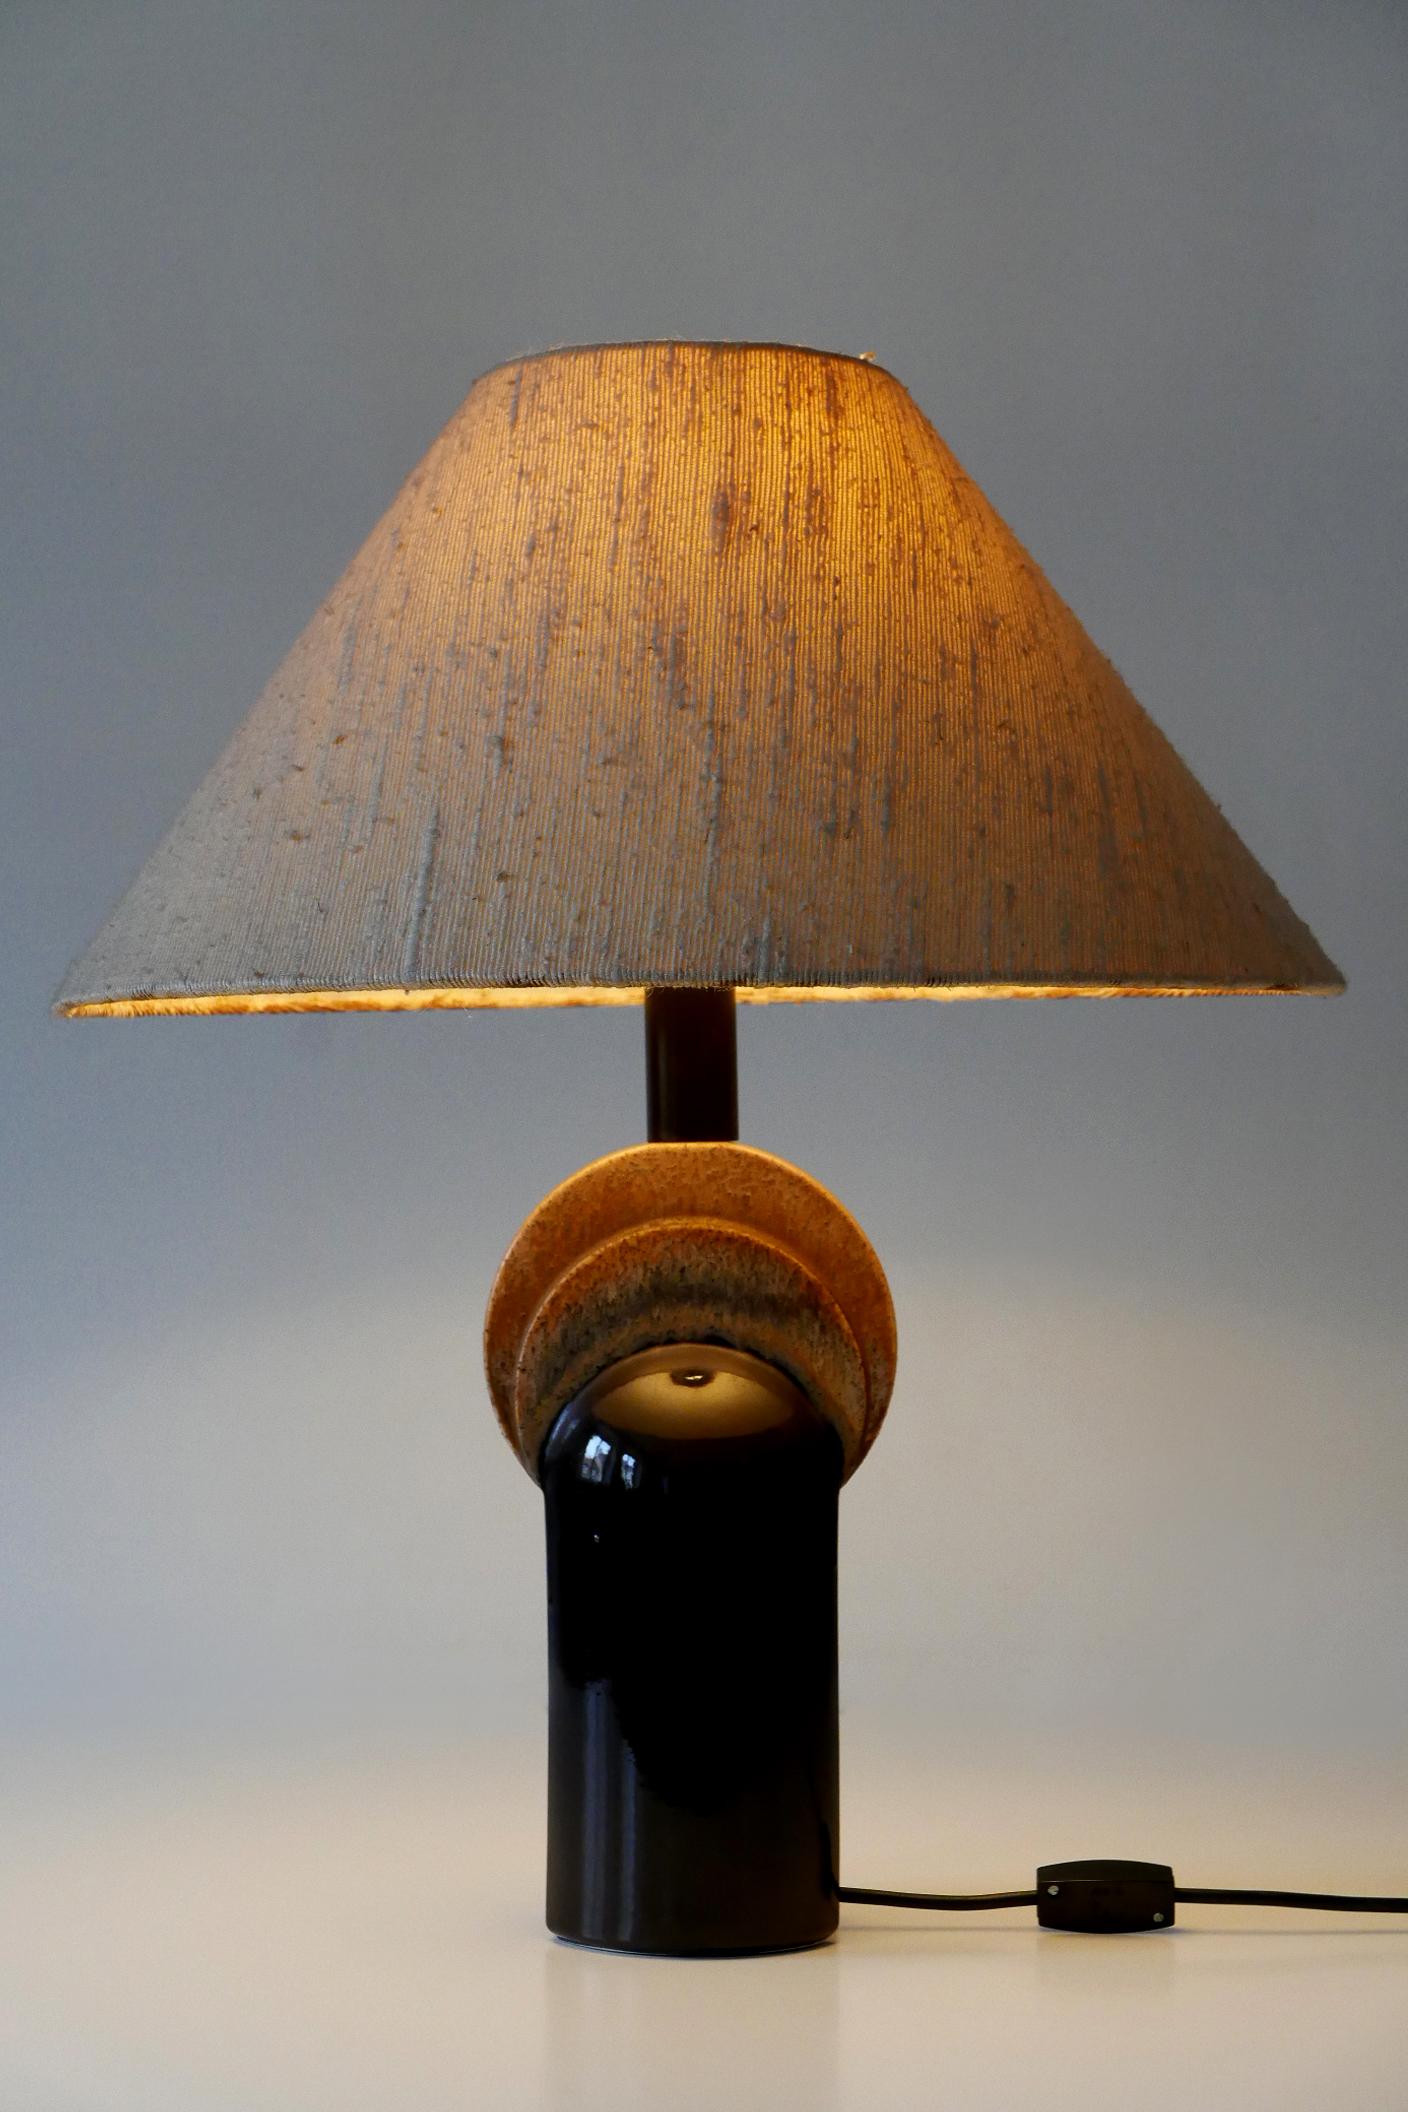 Äußerst seltene und elegante Keramik-Tischlampe aus der Jahrhundertmitte. Entworfen und hergestellt von Leola Design, Deutschland, 1960er Jahre. Etikett des Herstellers auf dem Sockel.

Die aus Keramik und Stoff gefertigte Tischleuchte wird mit 1 x